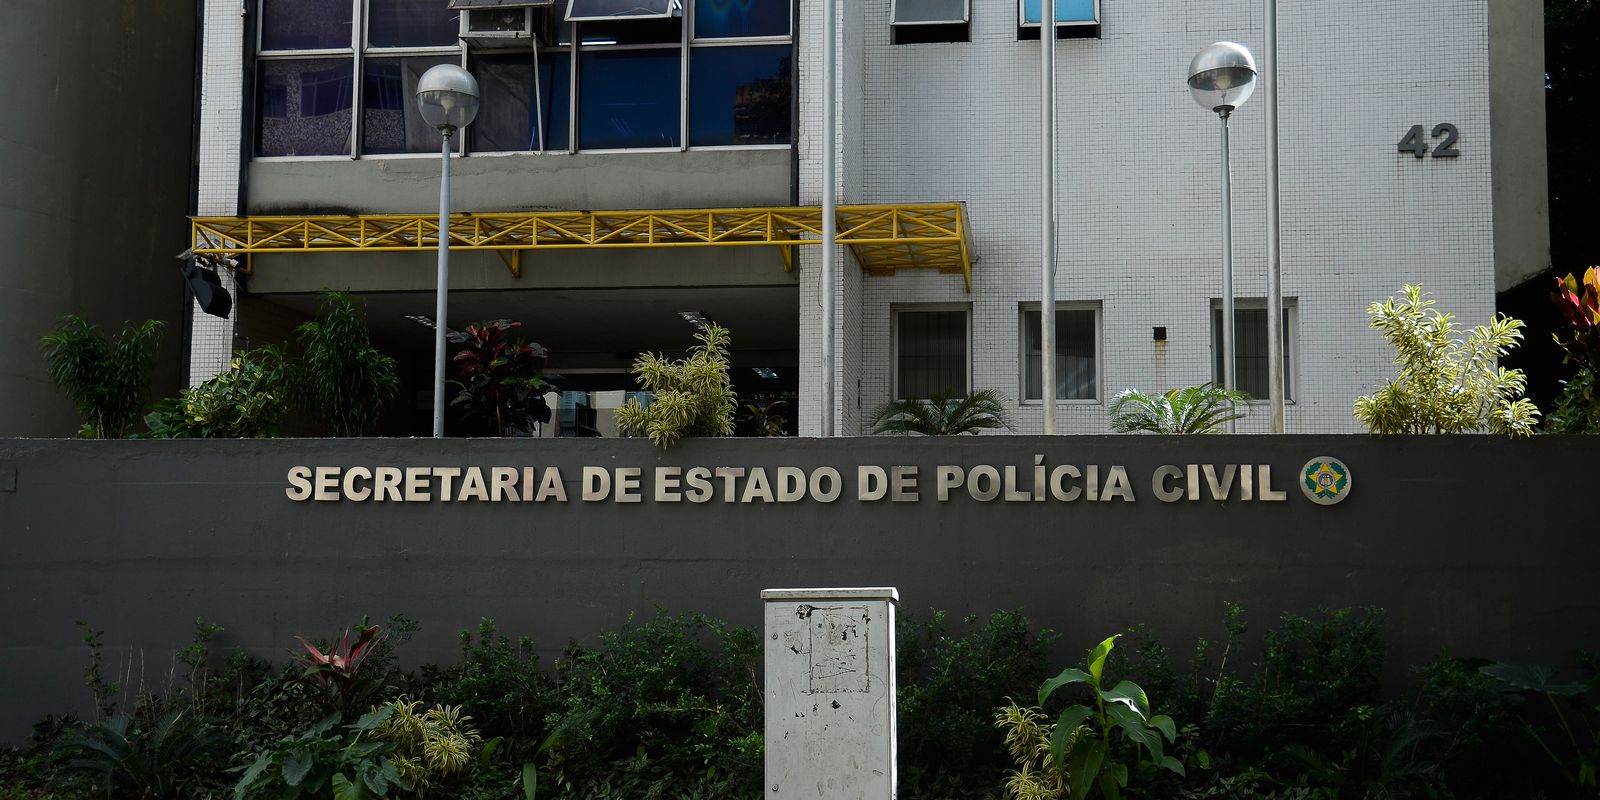 Fachada da Secretaria de Estado da Polícia Civil, no centro do Rio de Janeiro